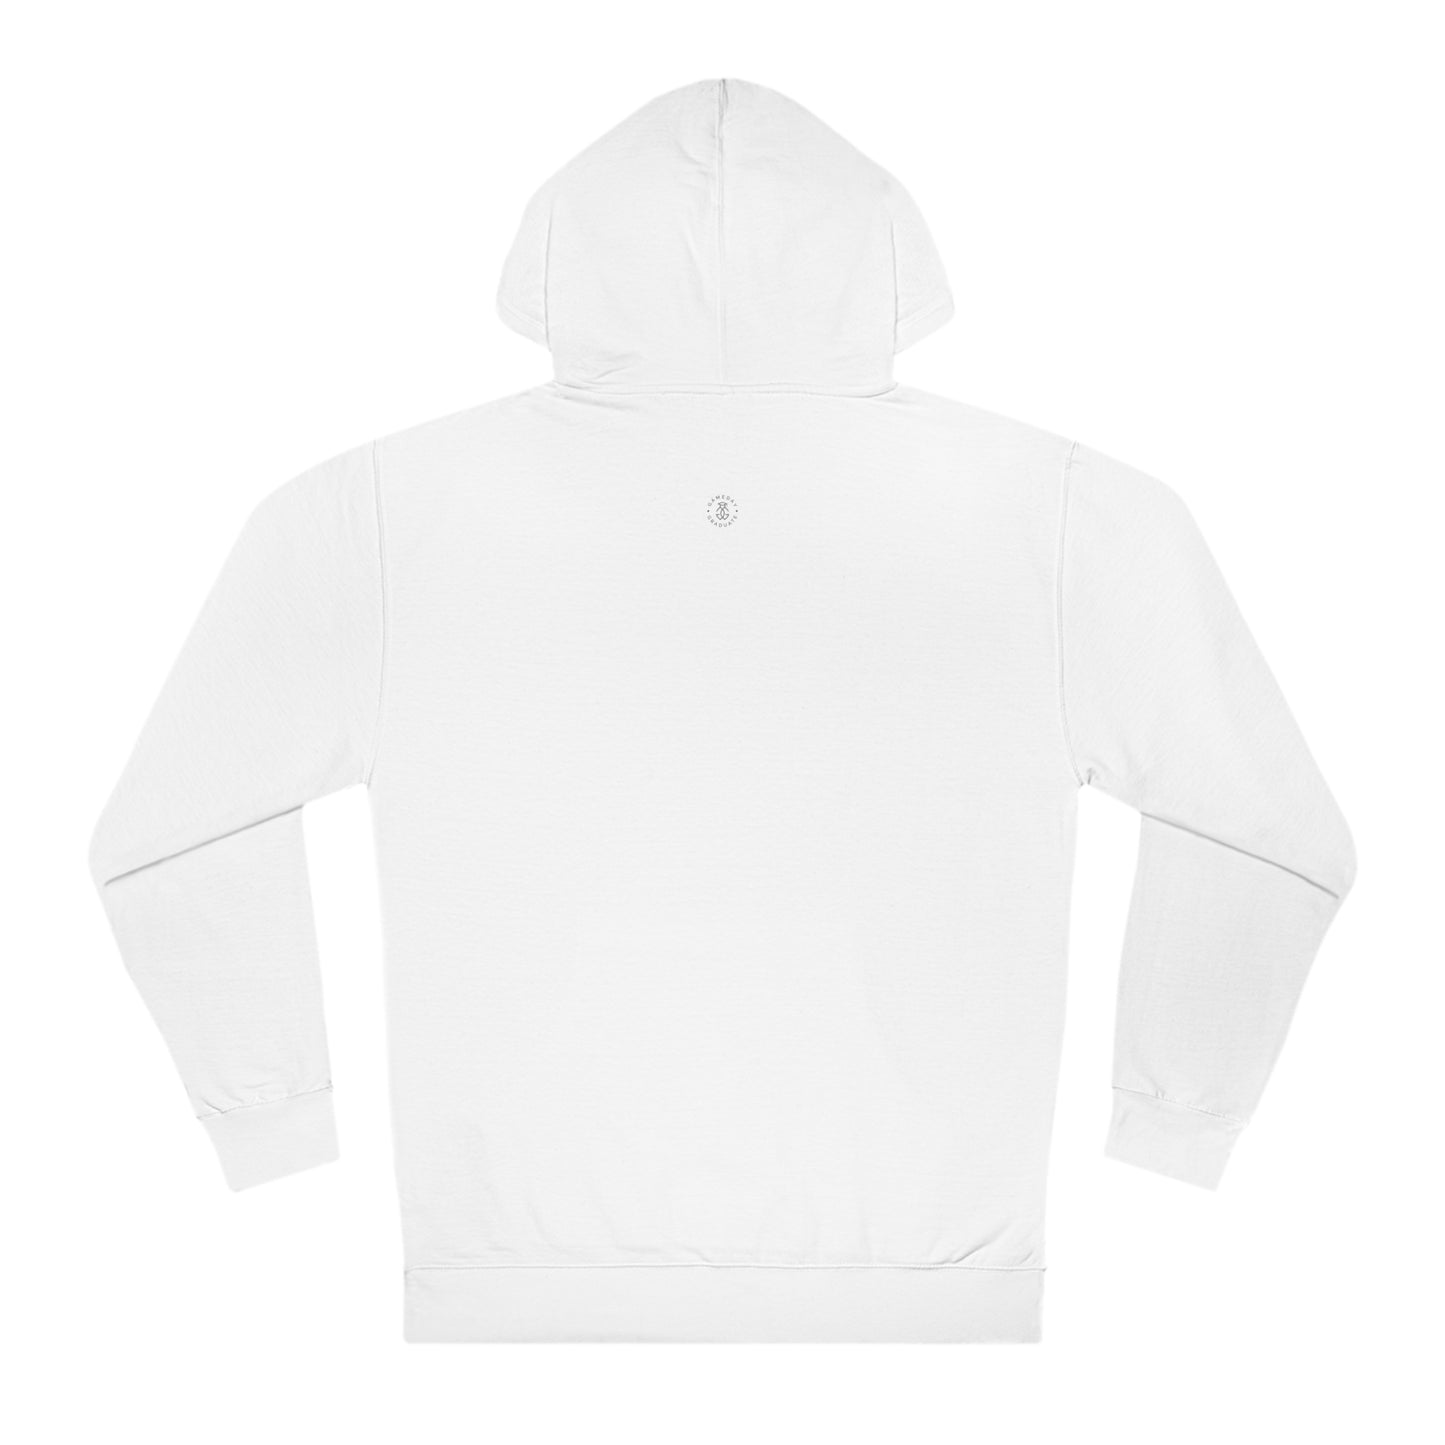 Cal - Berkeley Hooded Sweatshirt